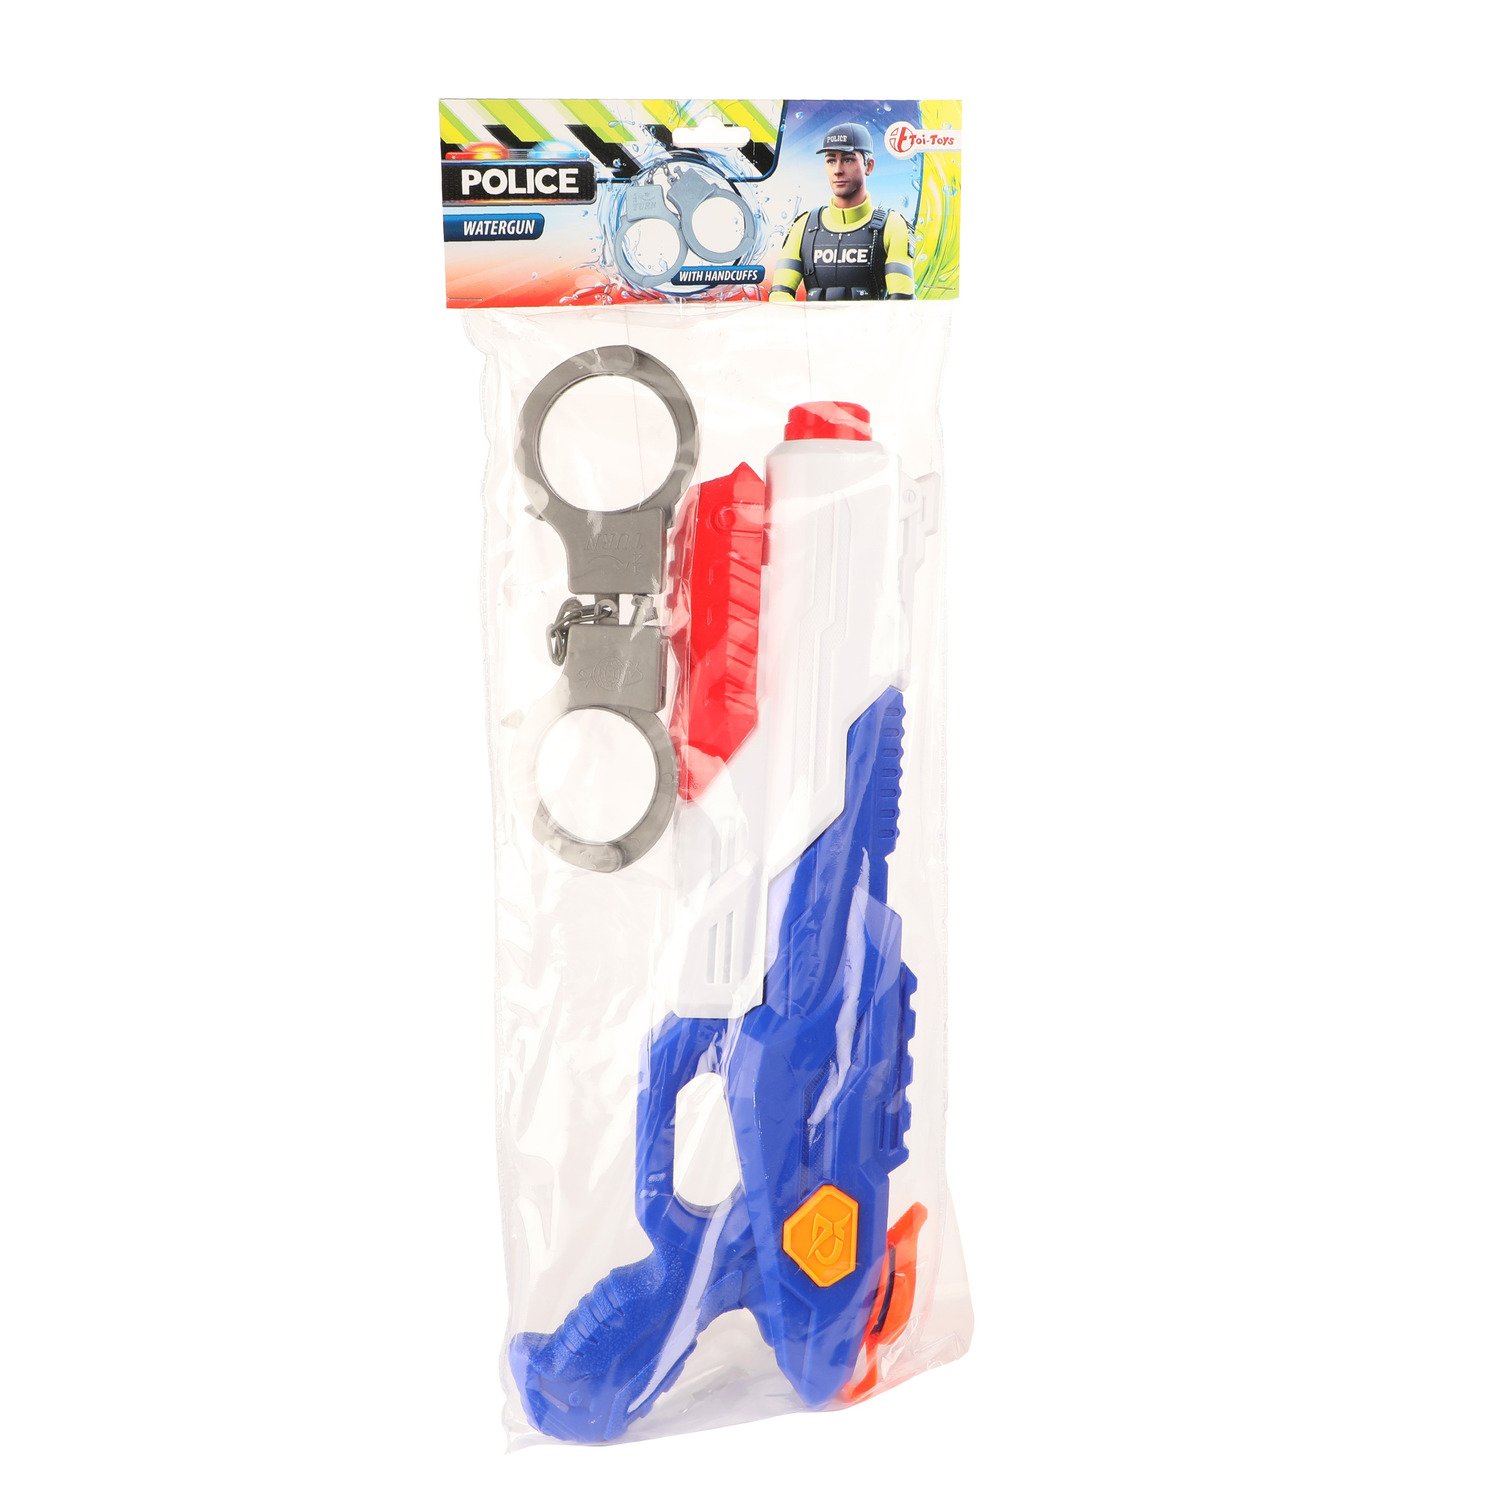 1x Waterpistolen/waterpistool politie van 40 cm inclusief handboeien kinderspeelgoed - waterspeelgoed van kunststof - Blauw